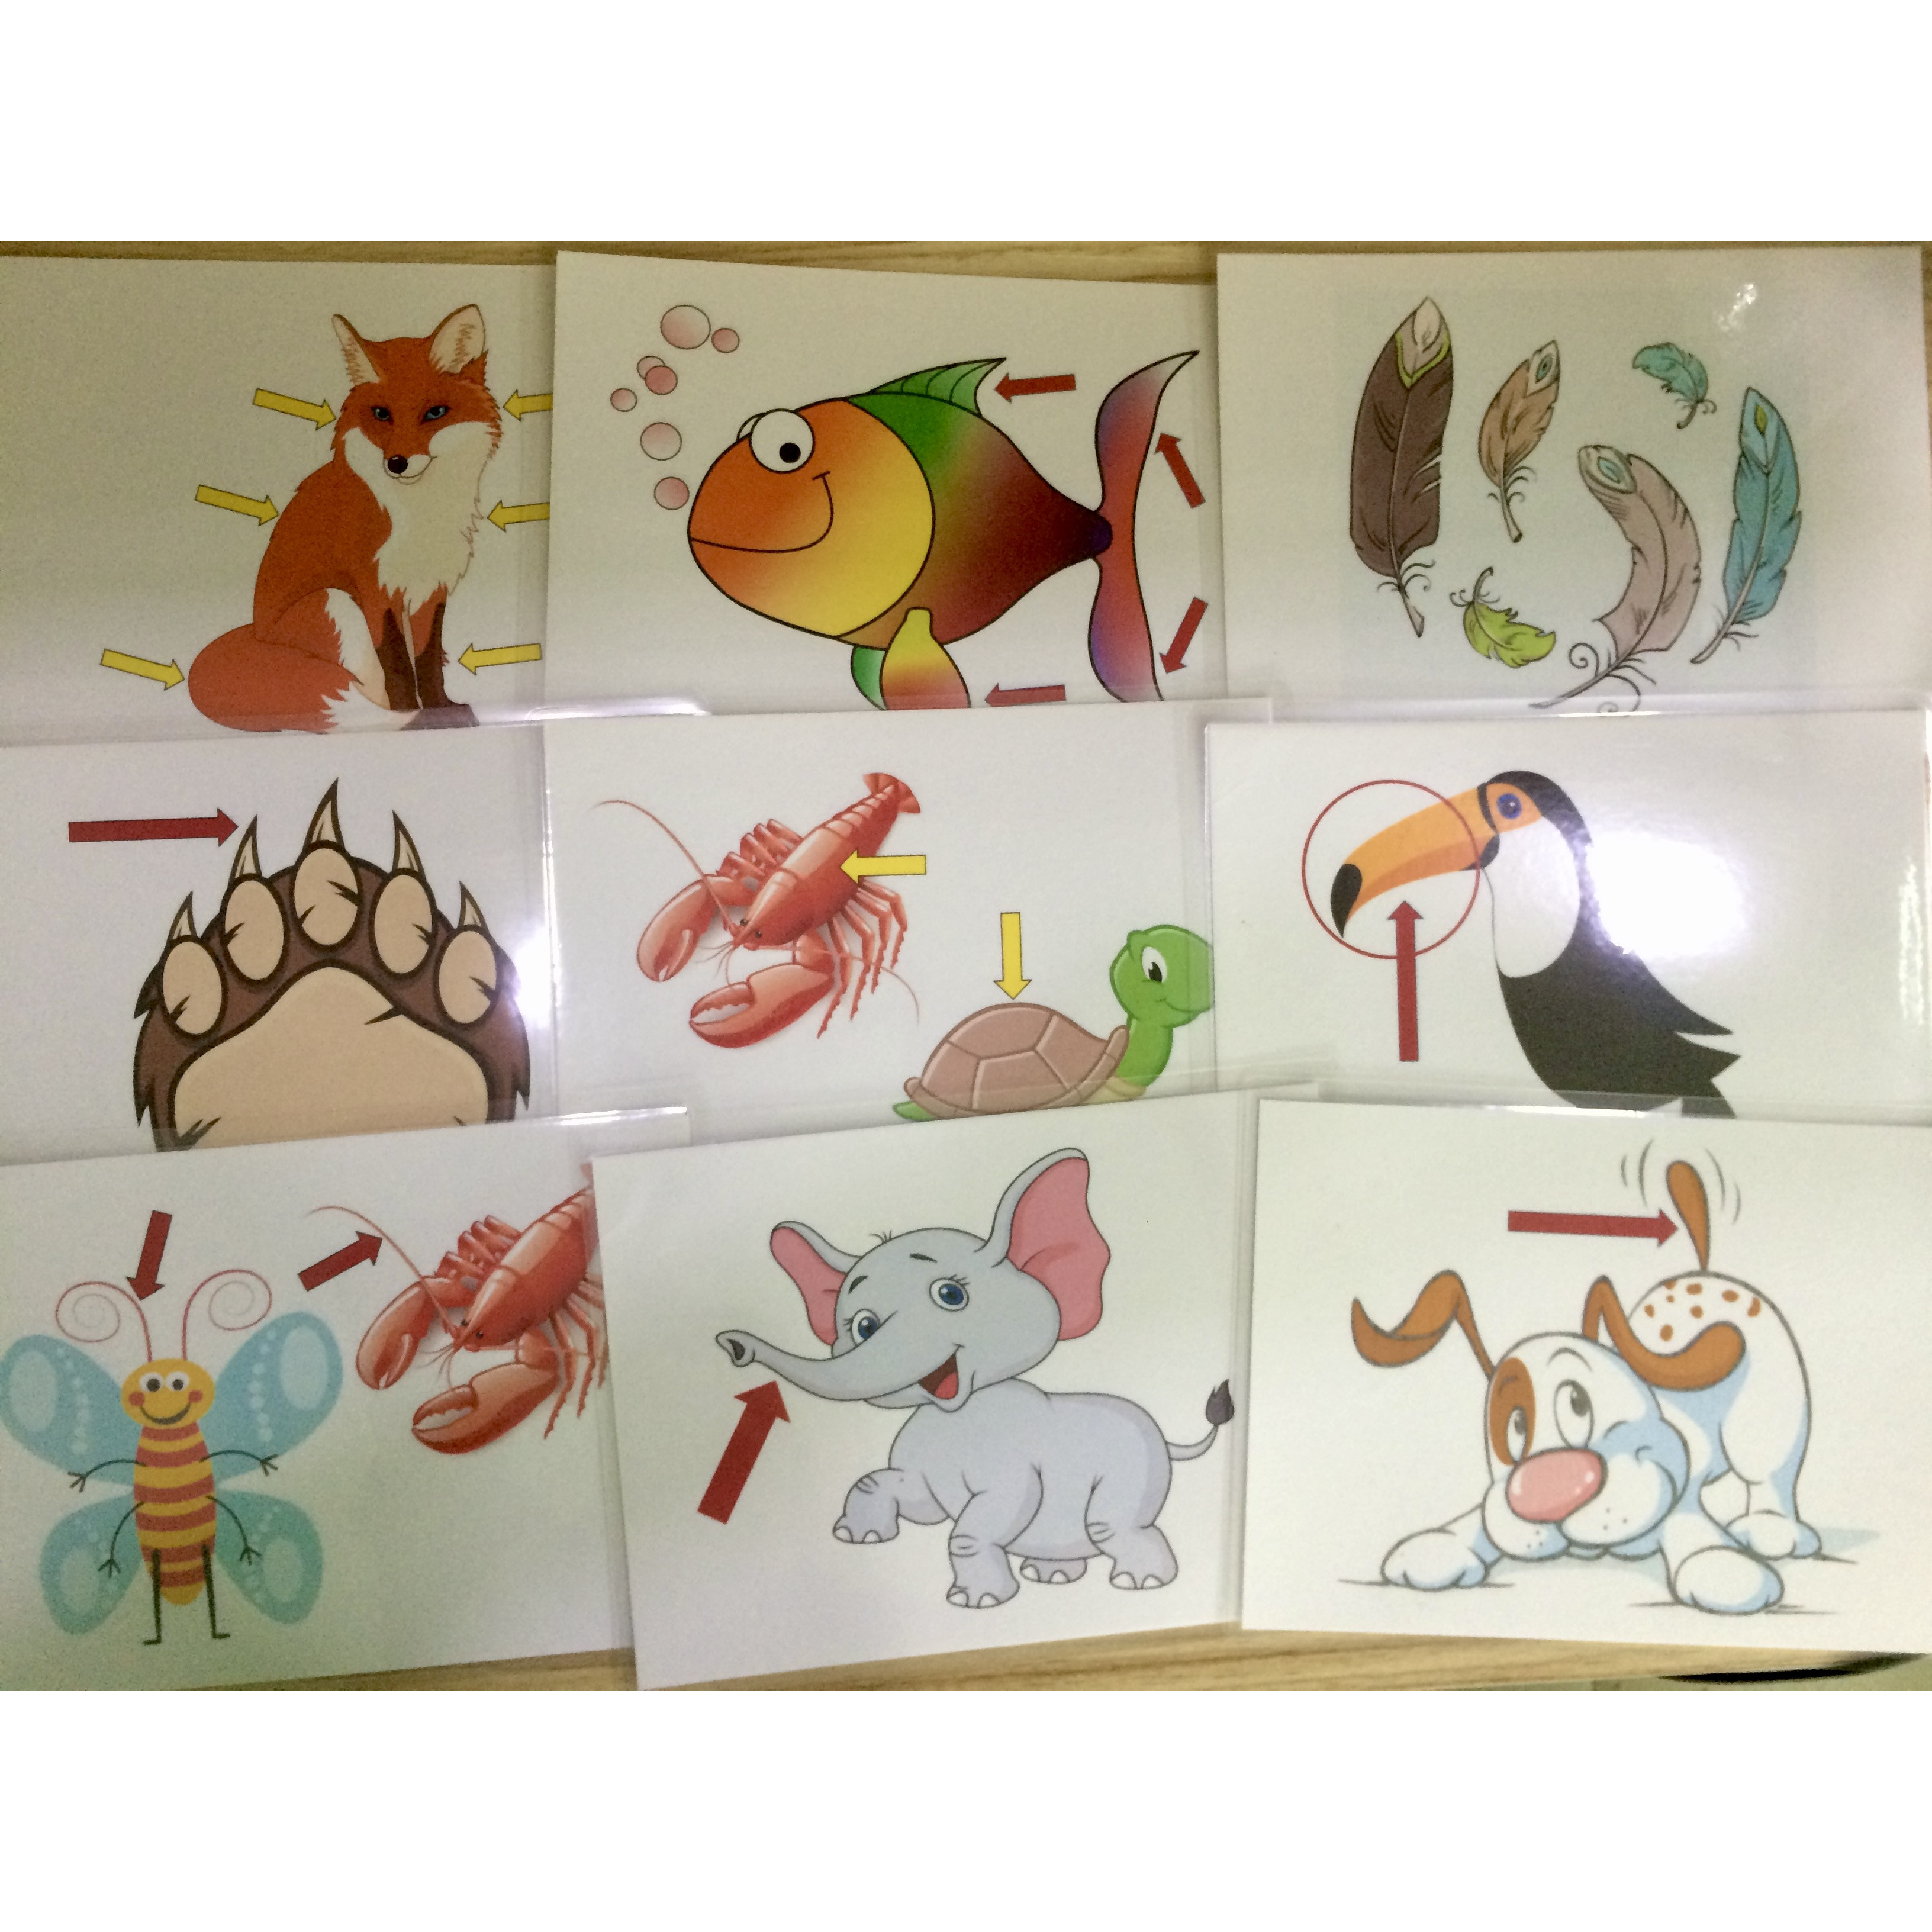 Animals' body part Flashcards - Thẻ học tiếng Anh chủ đề các bộ phận cơ thể động vật - 15 cards